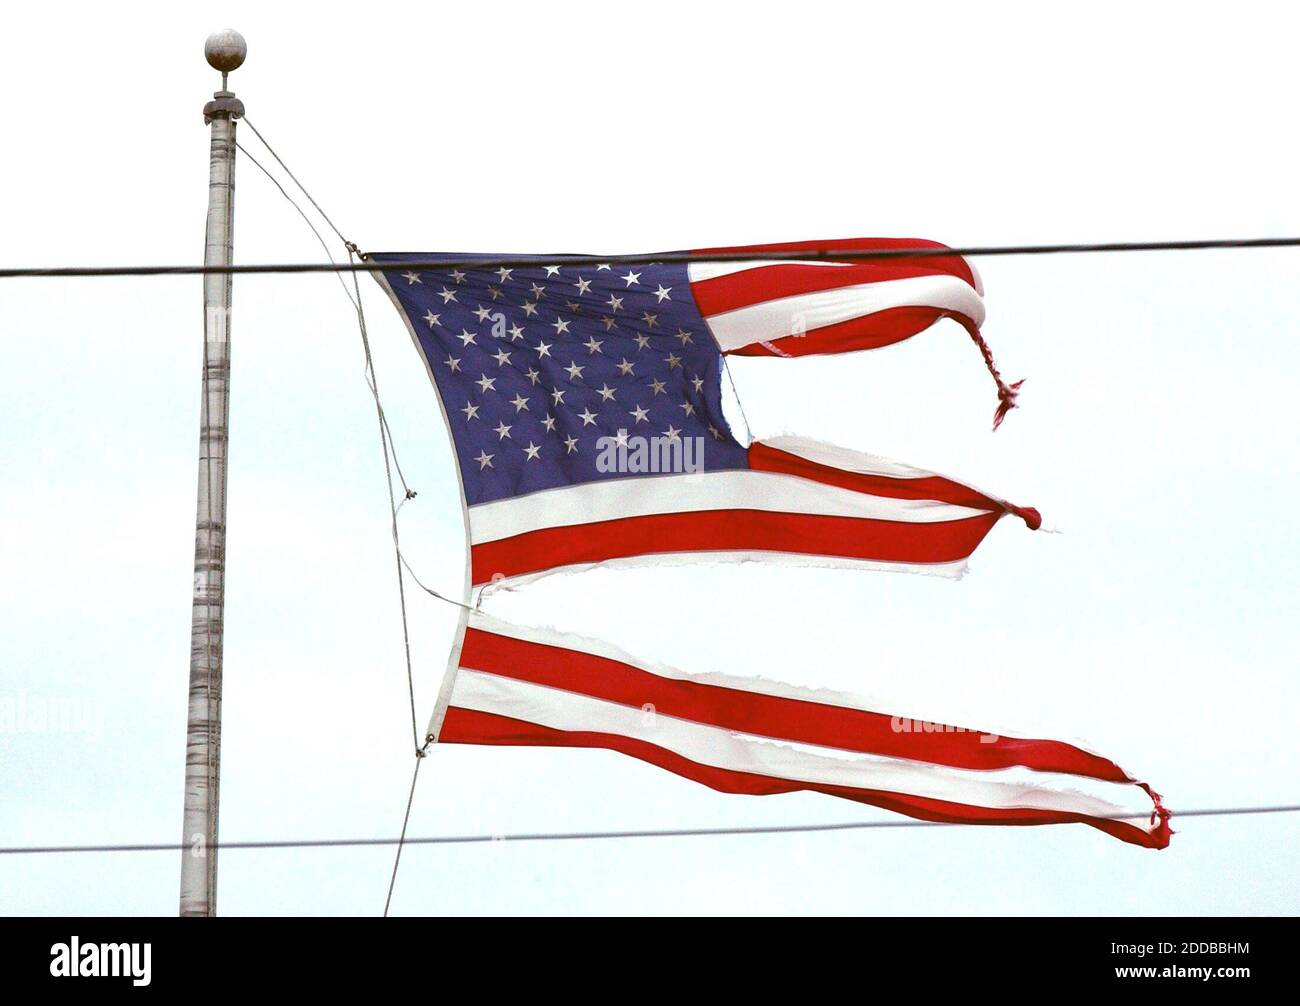 NO HAY PELÍCULA, NO HAY VÍDEO, NO hay televisión, NO HAY DOCUMENTAL - una bandera americana destrozada por los vientos del huracán Ivan vuela sobre Paspagoula, Mississippi, el jueves, 16 de septiembre de 2004. Foto de Drew Tarter/Biloxi Sun Herald/KRT/ABACA. Foto de stock